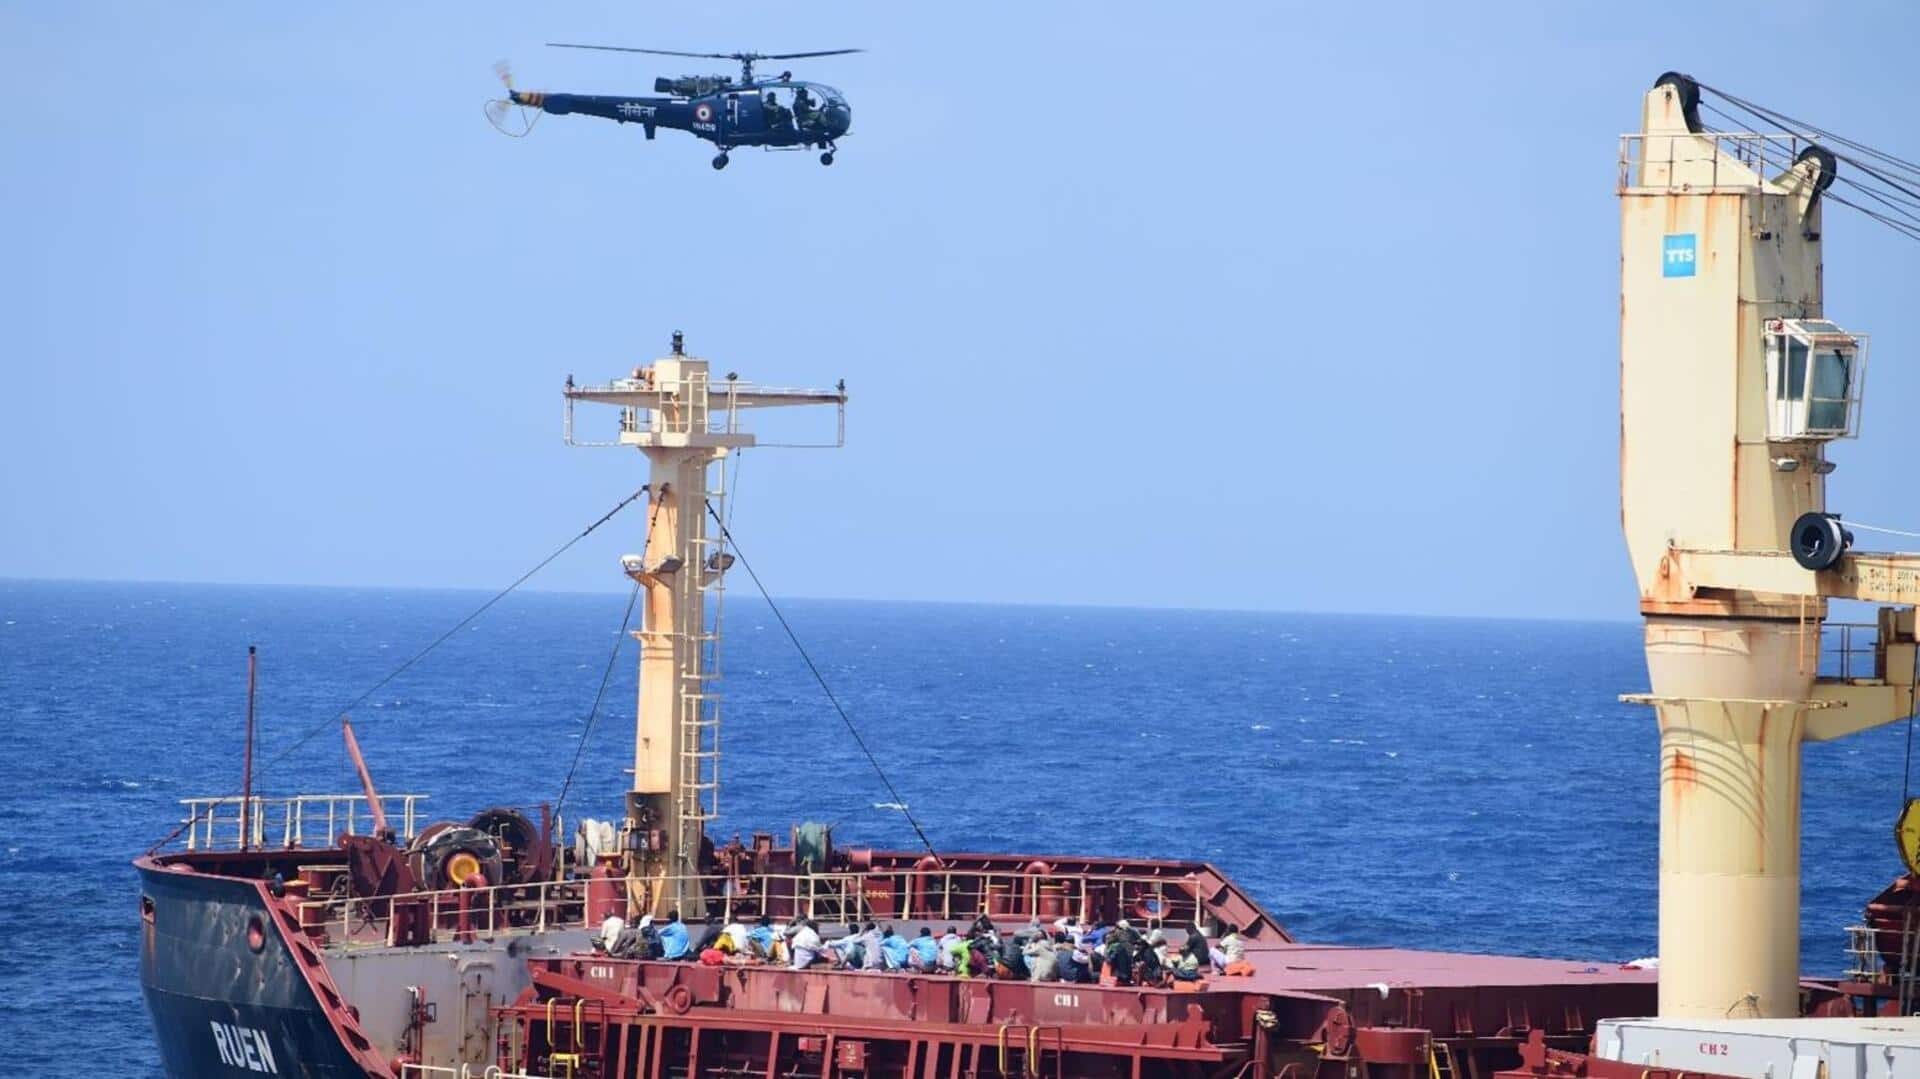 भारतीय नौसेना ने अपह्रत जहाज से 17 लोगों को बचाया, 35 लुटेरों ने किया आत्मसमर्पण